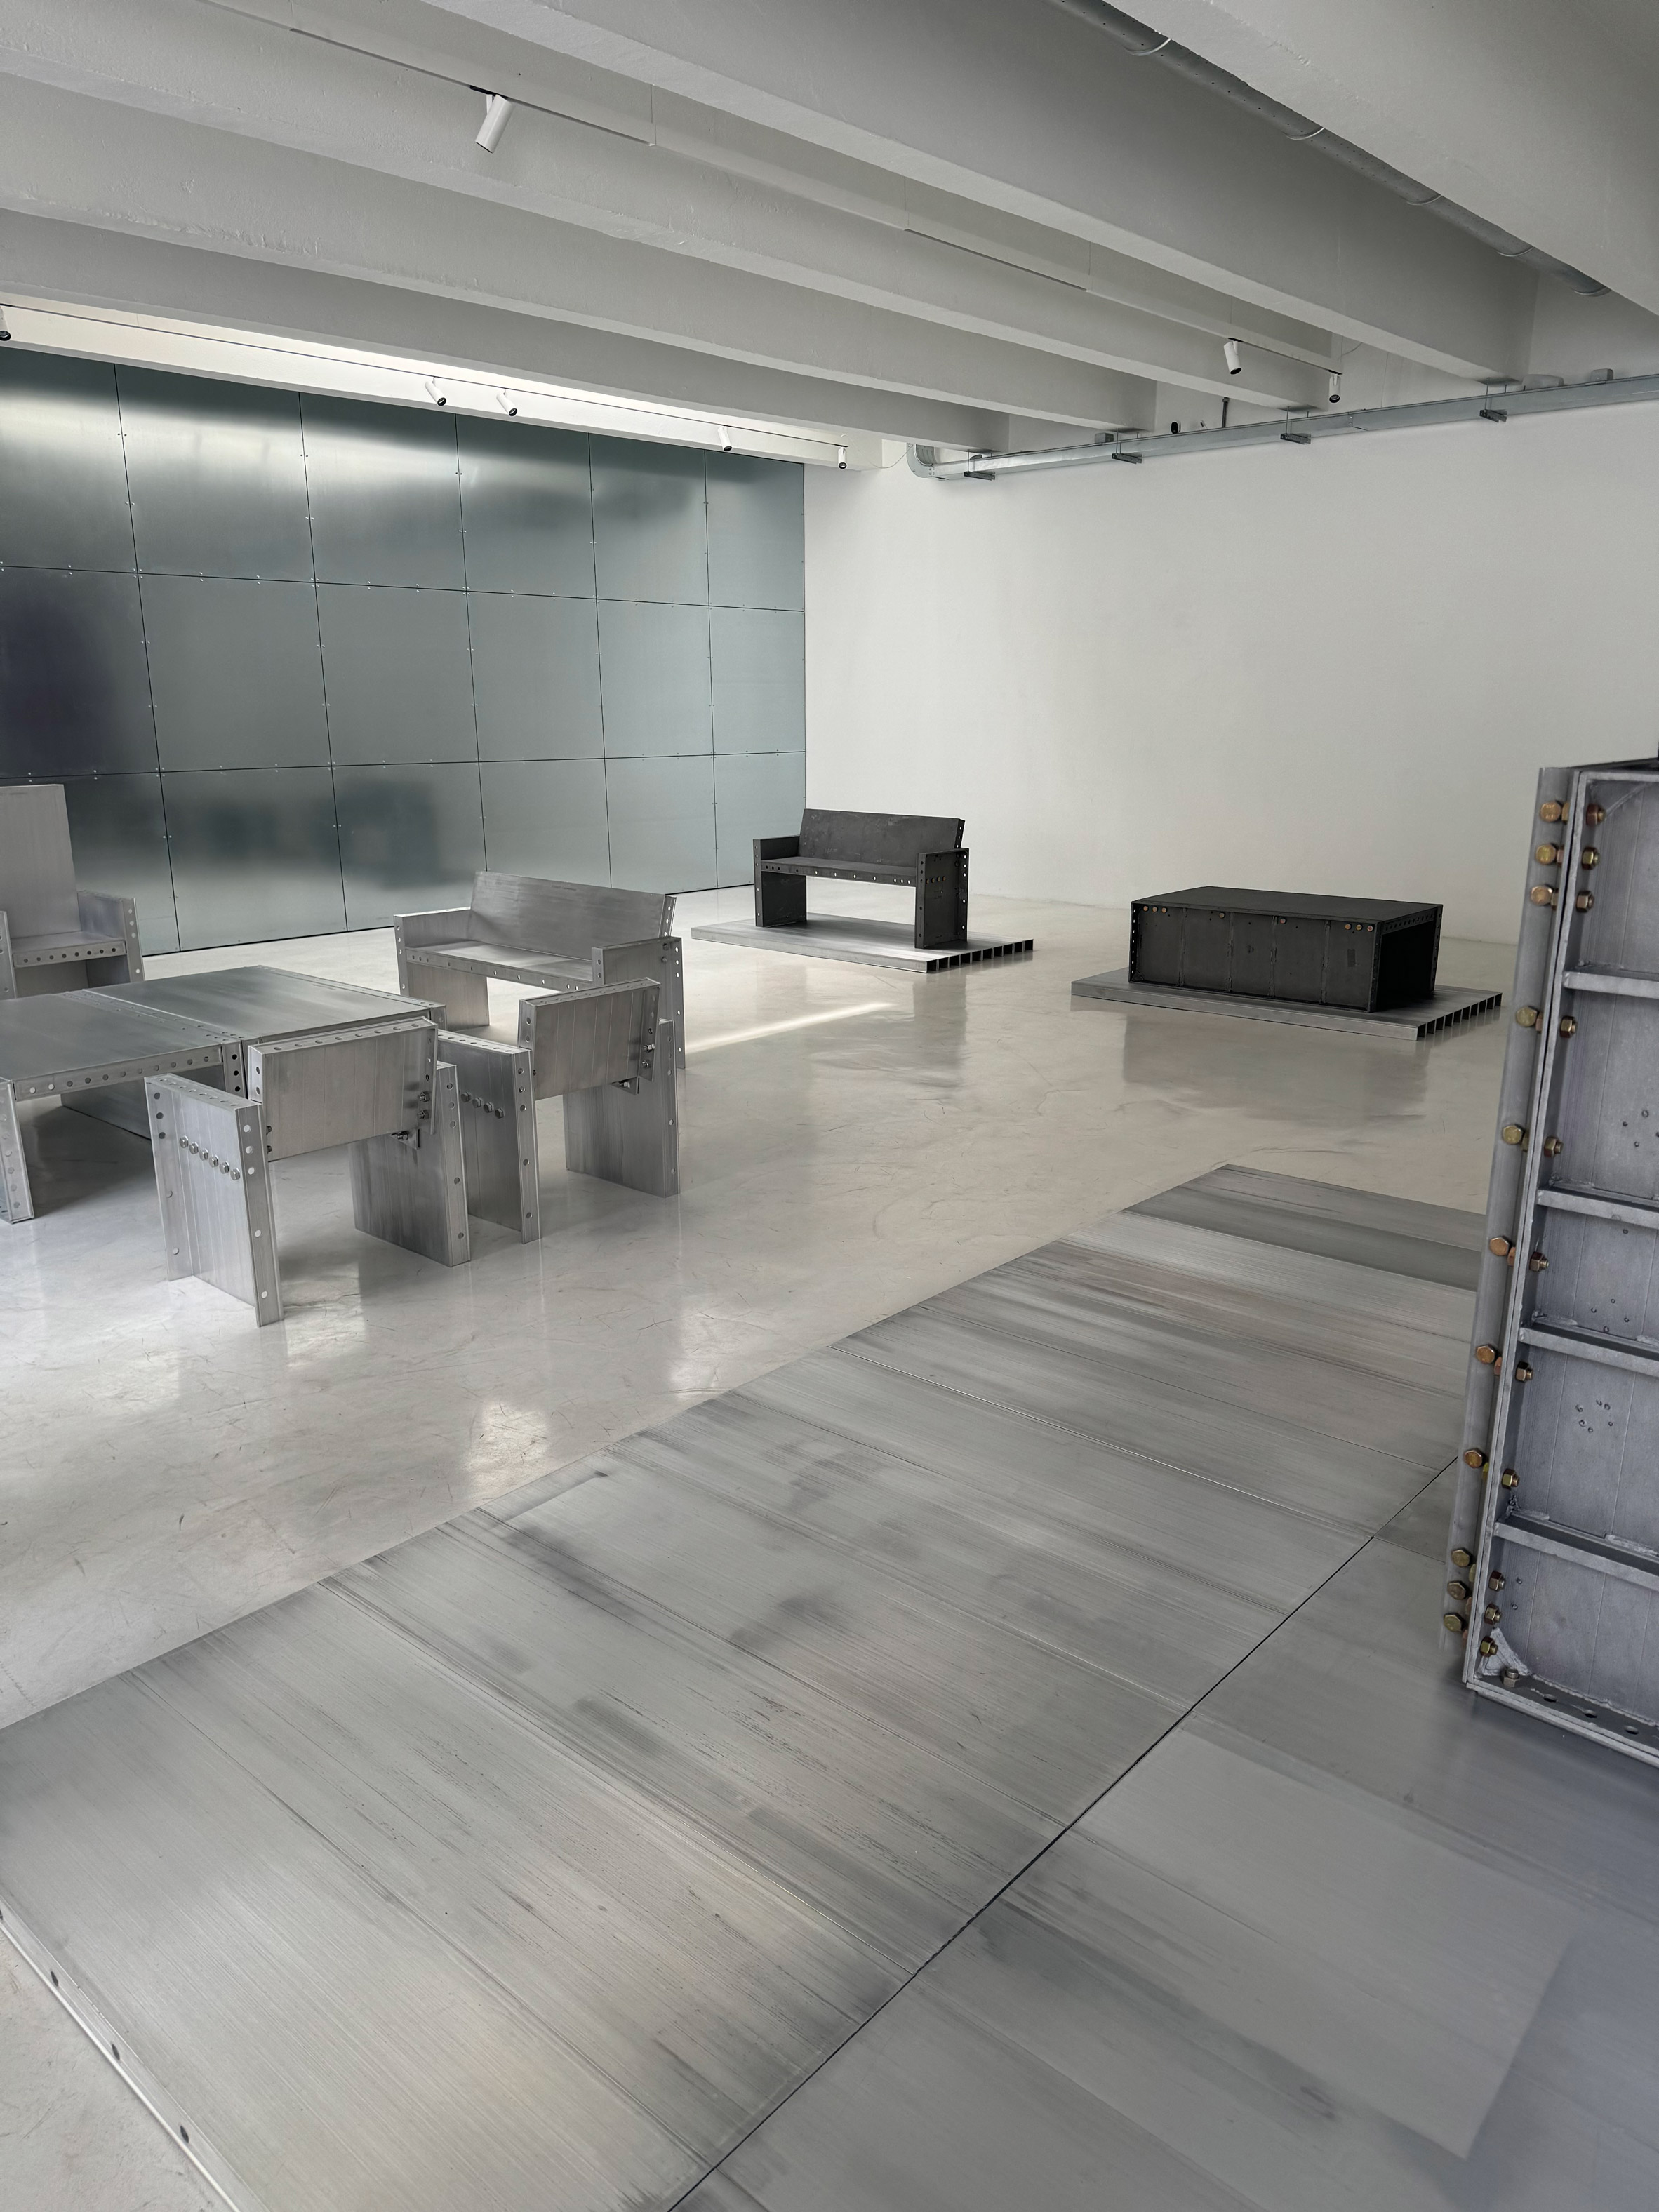 Niceworkshop展示由重复使用的摩天大楼模板制成的家具|ART-Arrakis | 建筑室内设计的创新与灵感